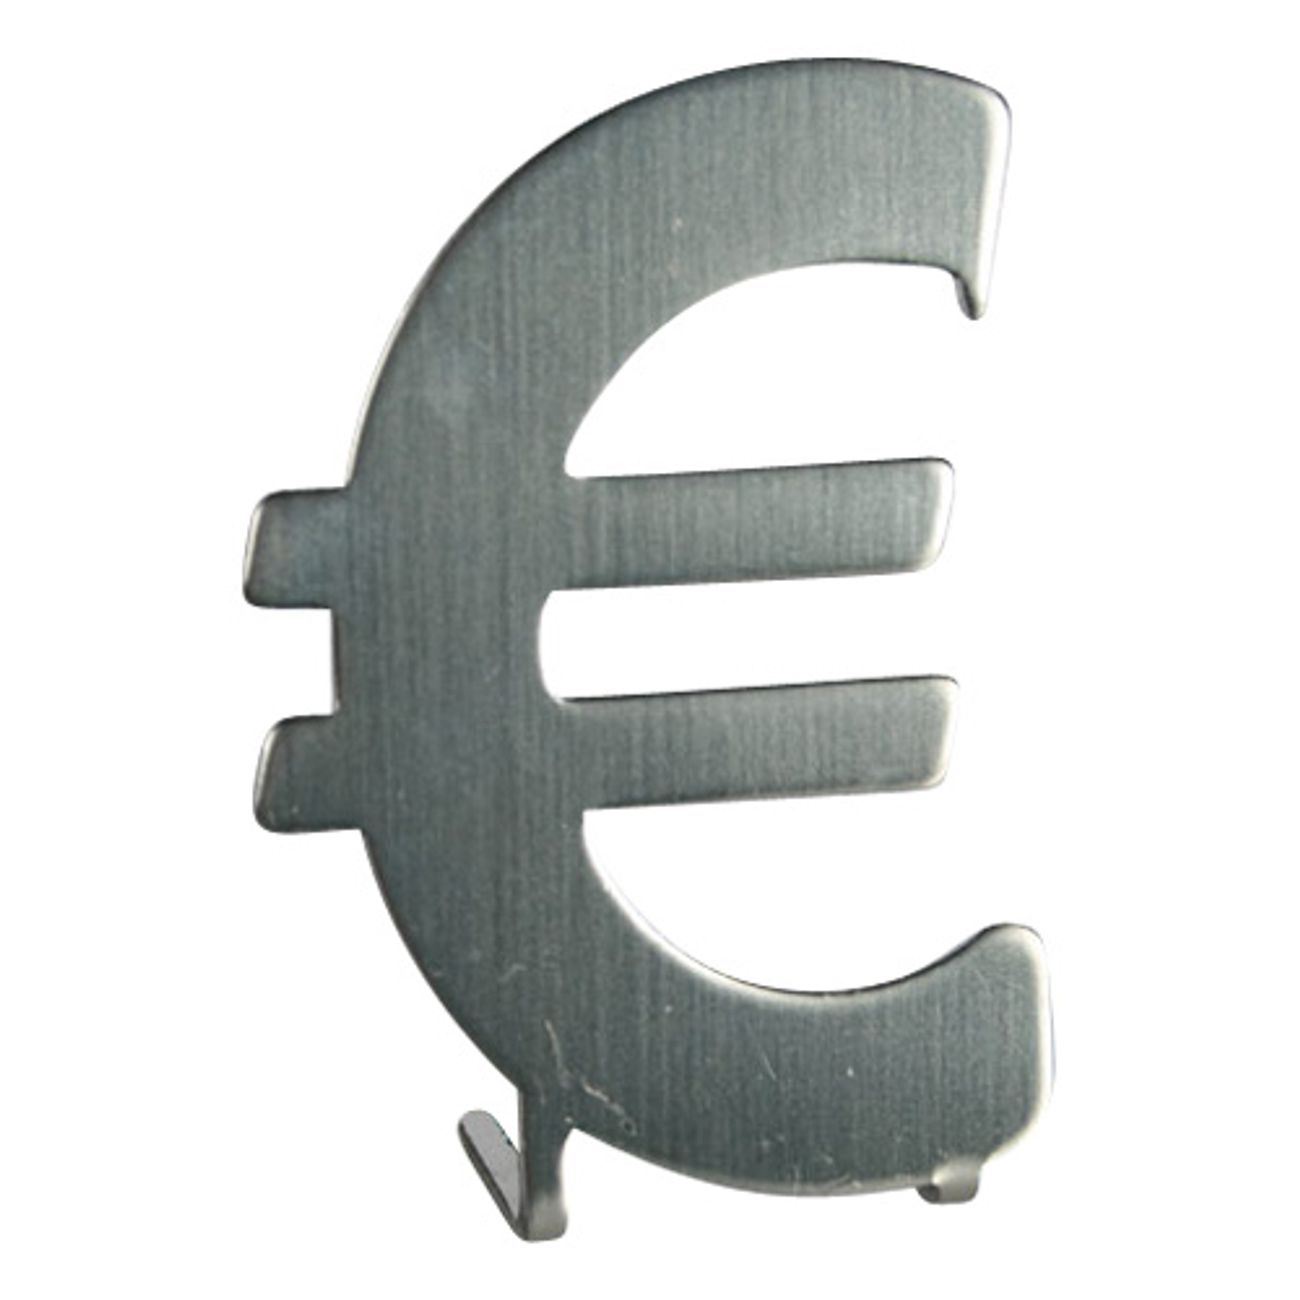 euro-kapsyloppnare-1